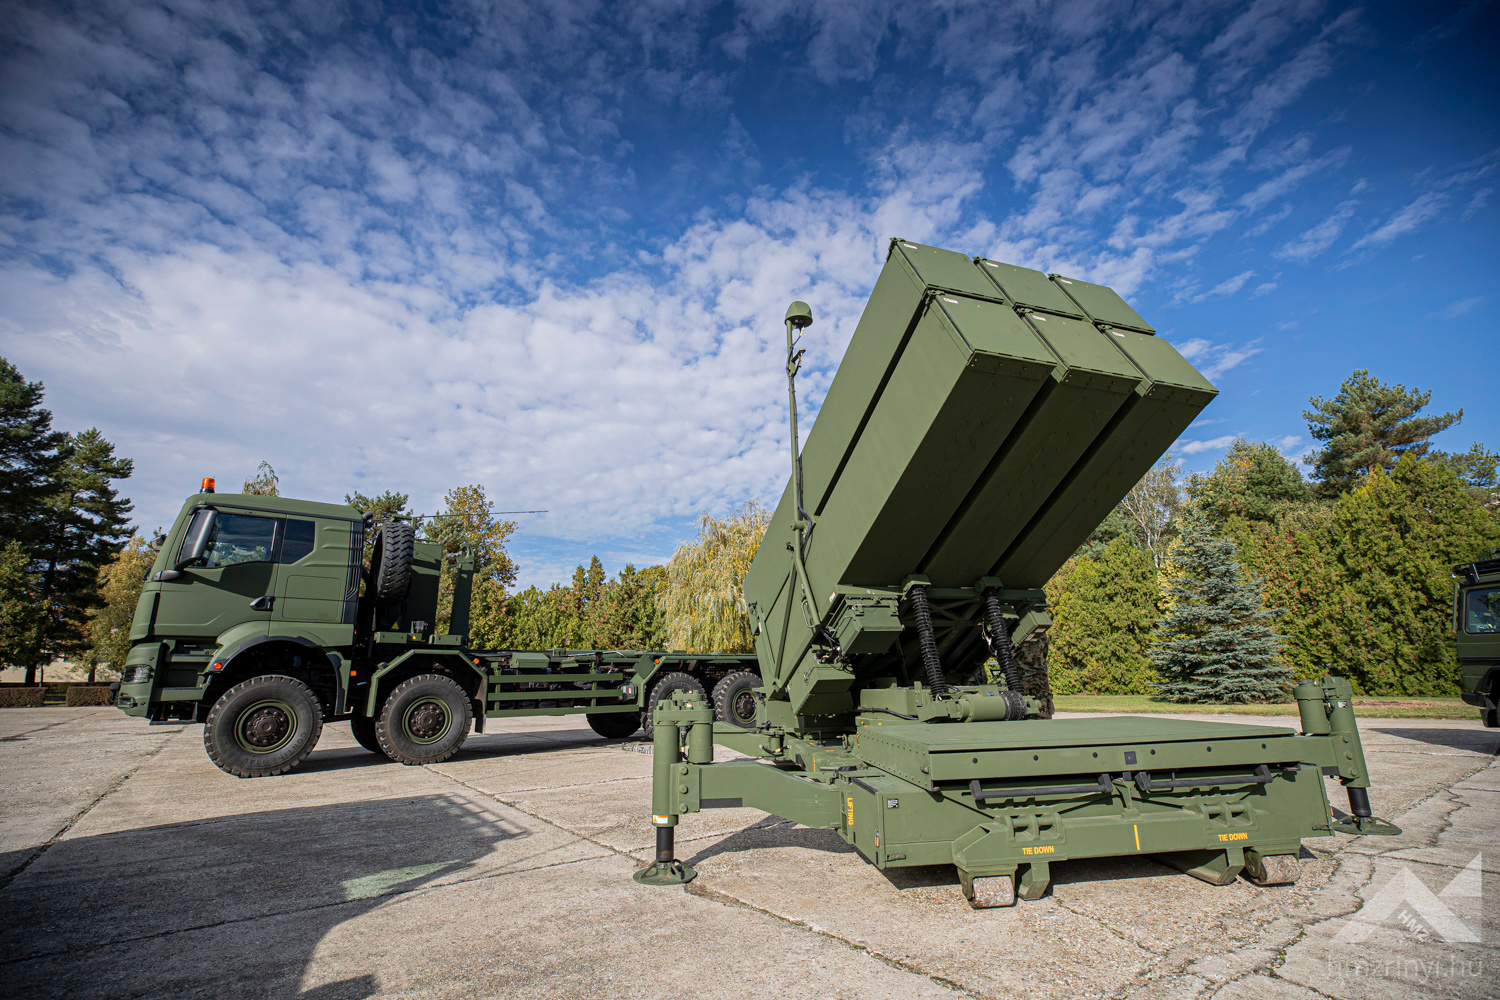 Remplacement des SAM 2K12 Kub : La Hongrie a reçu le premier lot de systèmes de missiles sol-air NASAMS.